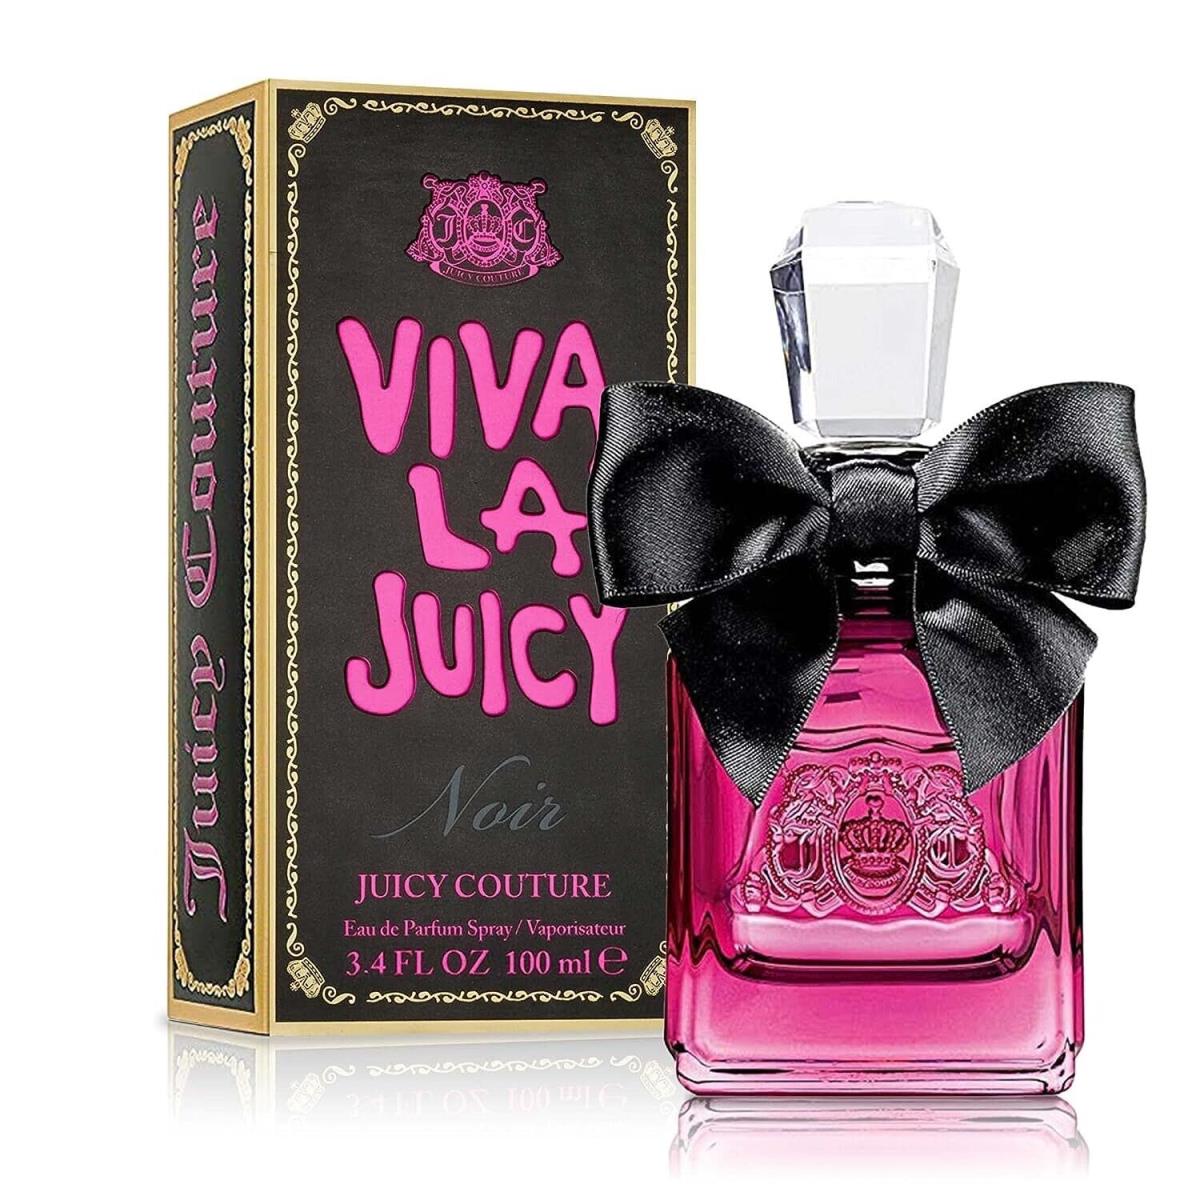 Juicy Couture Viva La Juicy Noir Eau de Parfum For Women 3.4 Oz / 100ml